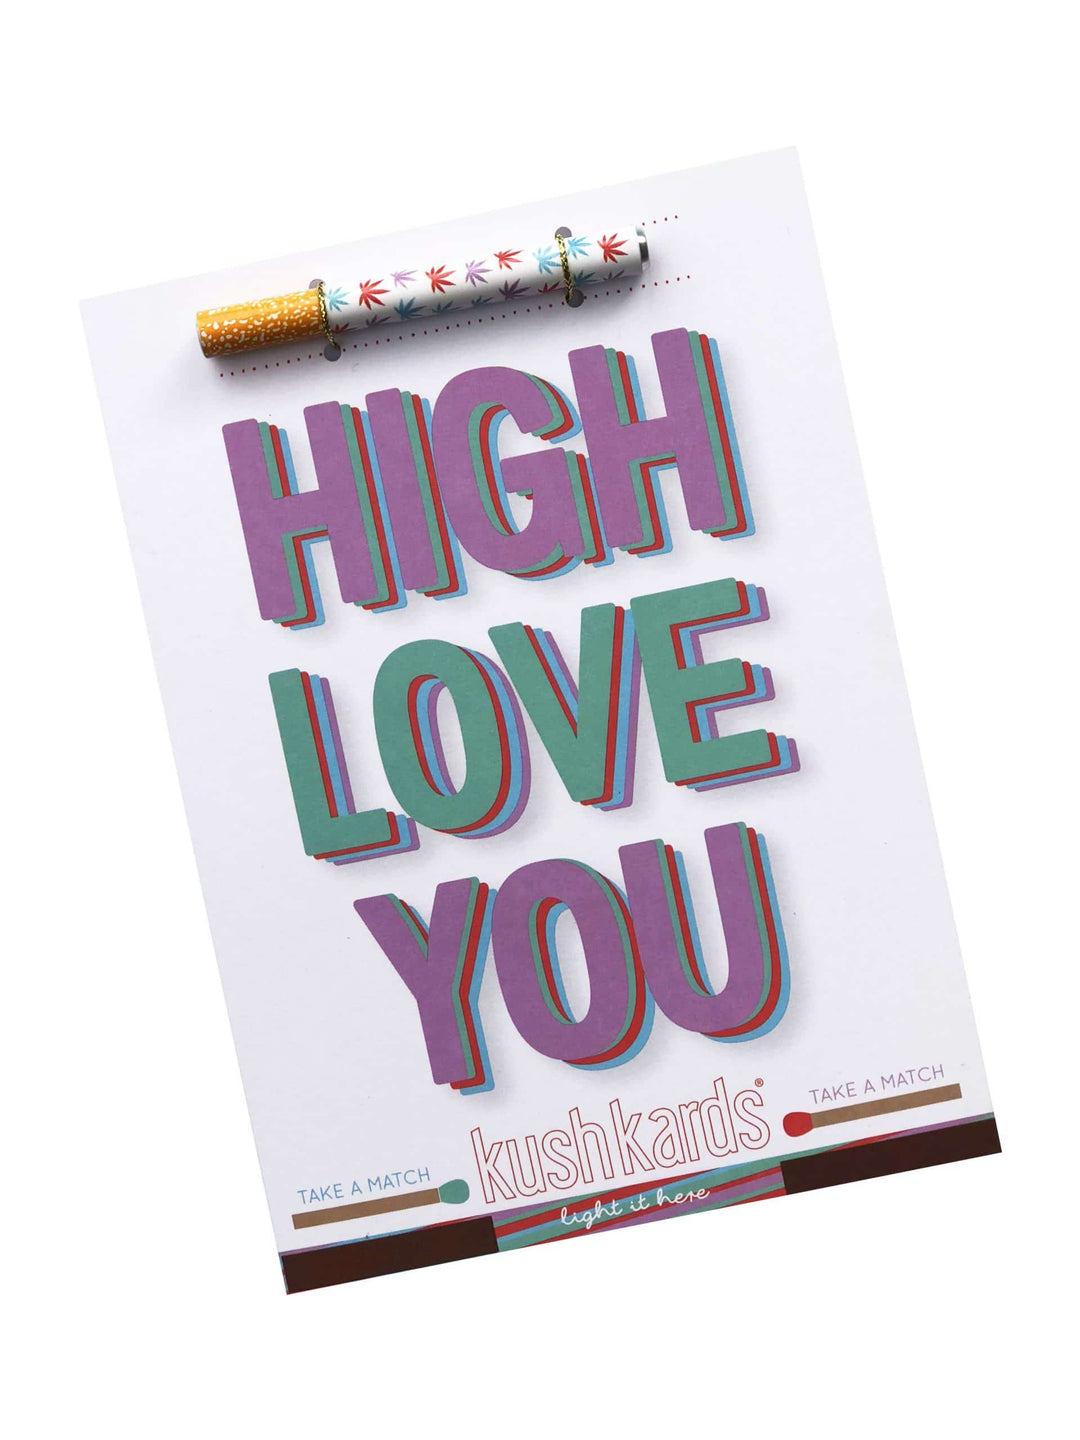 Kush Kards- High Love You